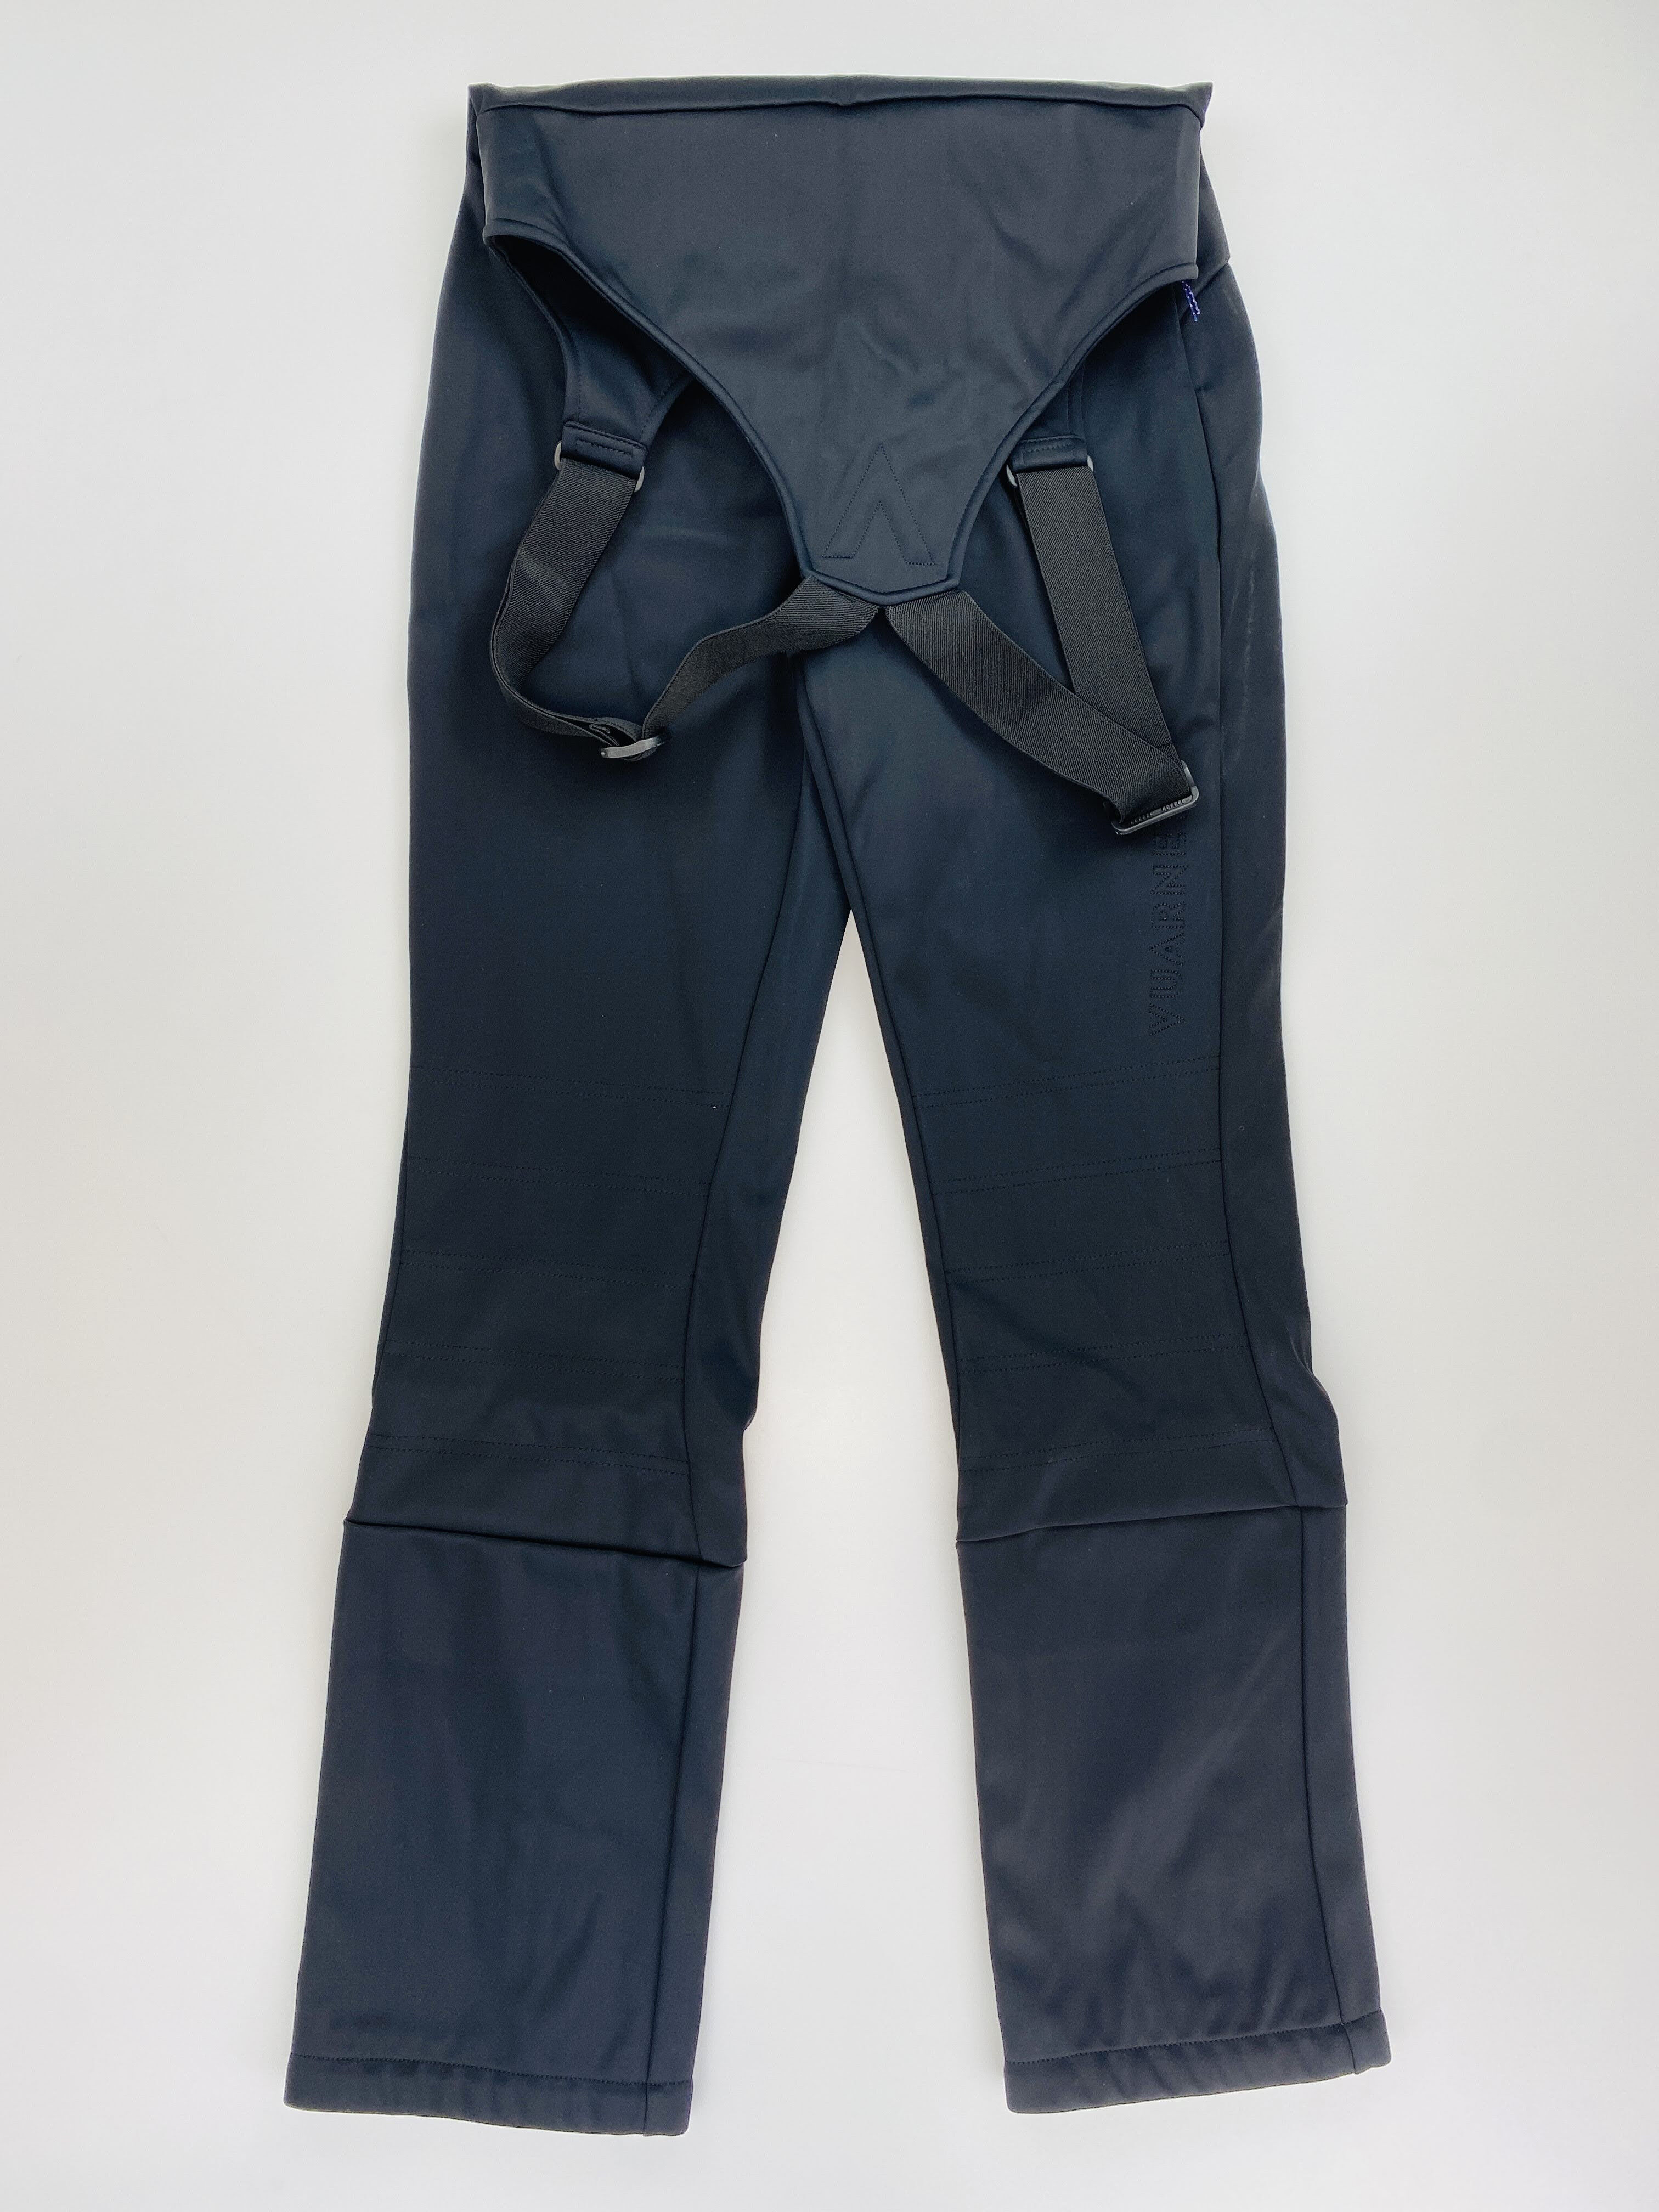 Vuarnet W'S Tosa Pant Saloppette - Second Hand Dámské lyžařské kalhoty - Černá - S | Hardloop